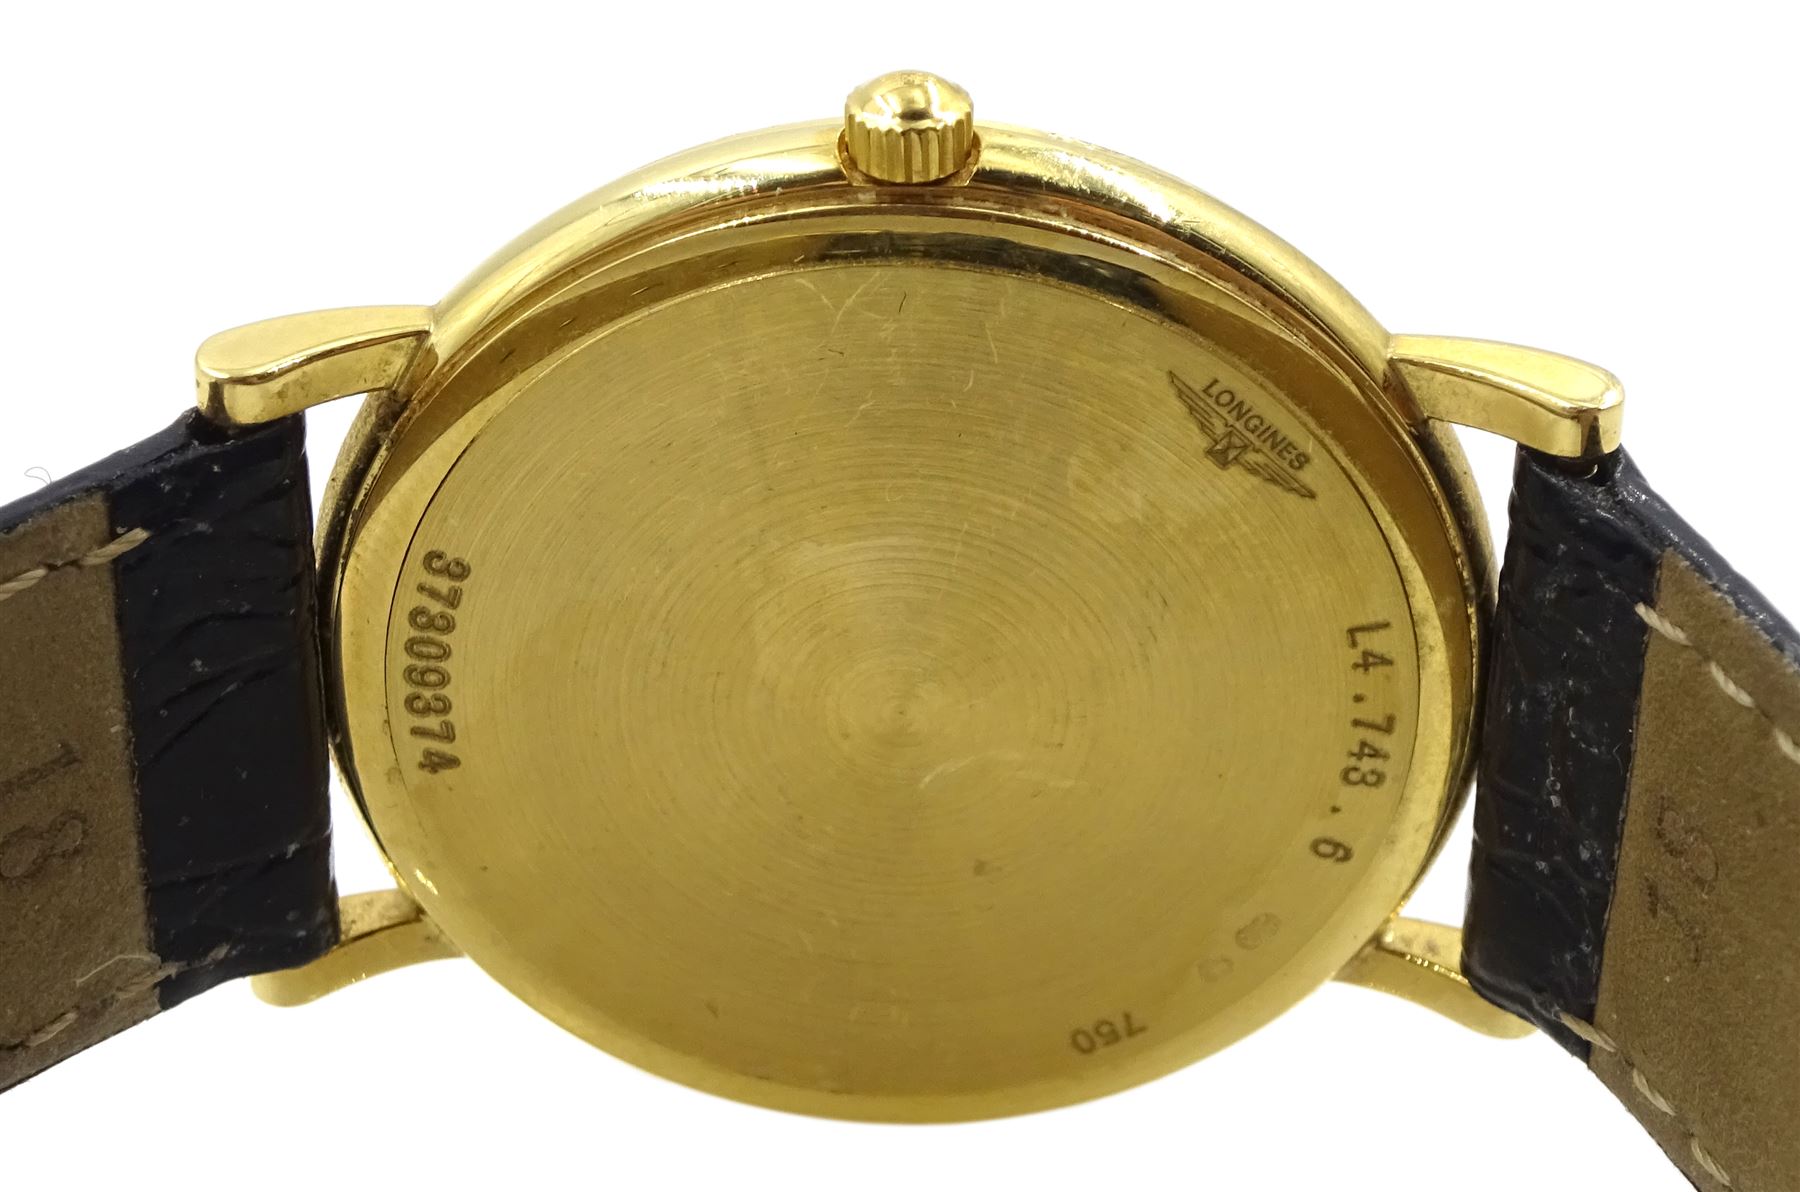 Longines Présence gentleman's 18ct gold quartz wristwatch - Image 3 of 3